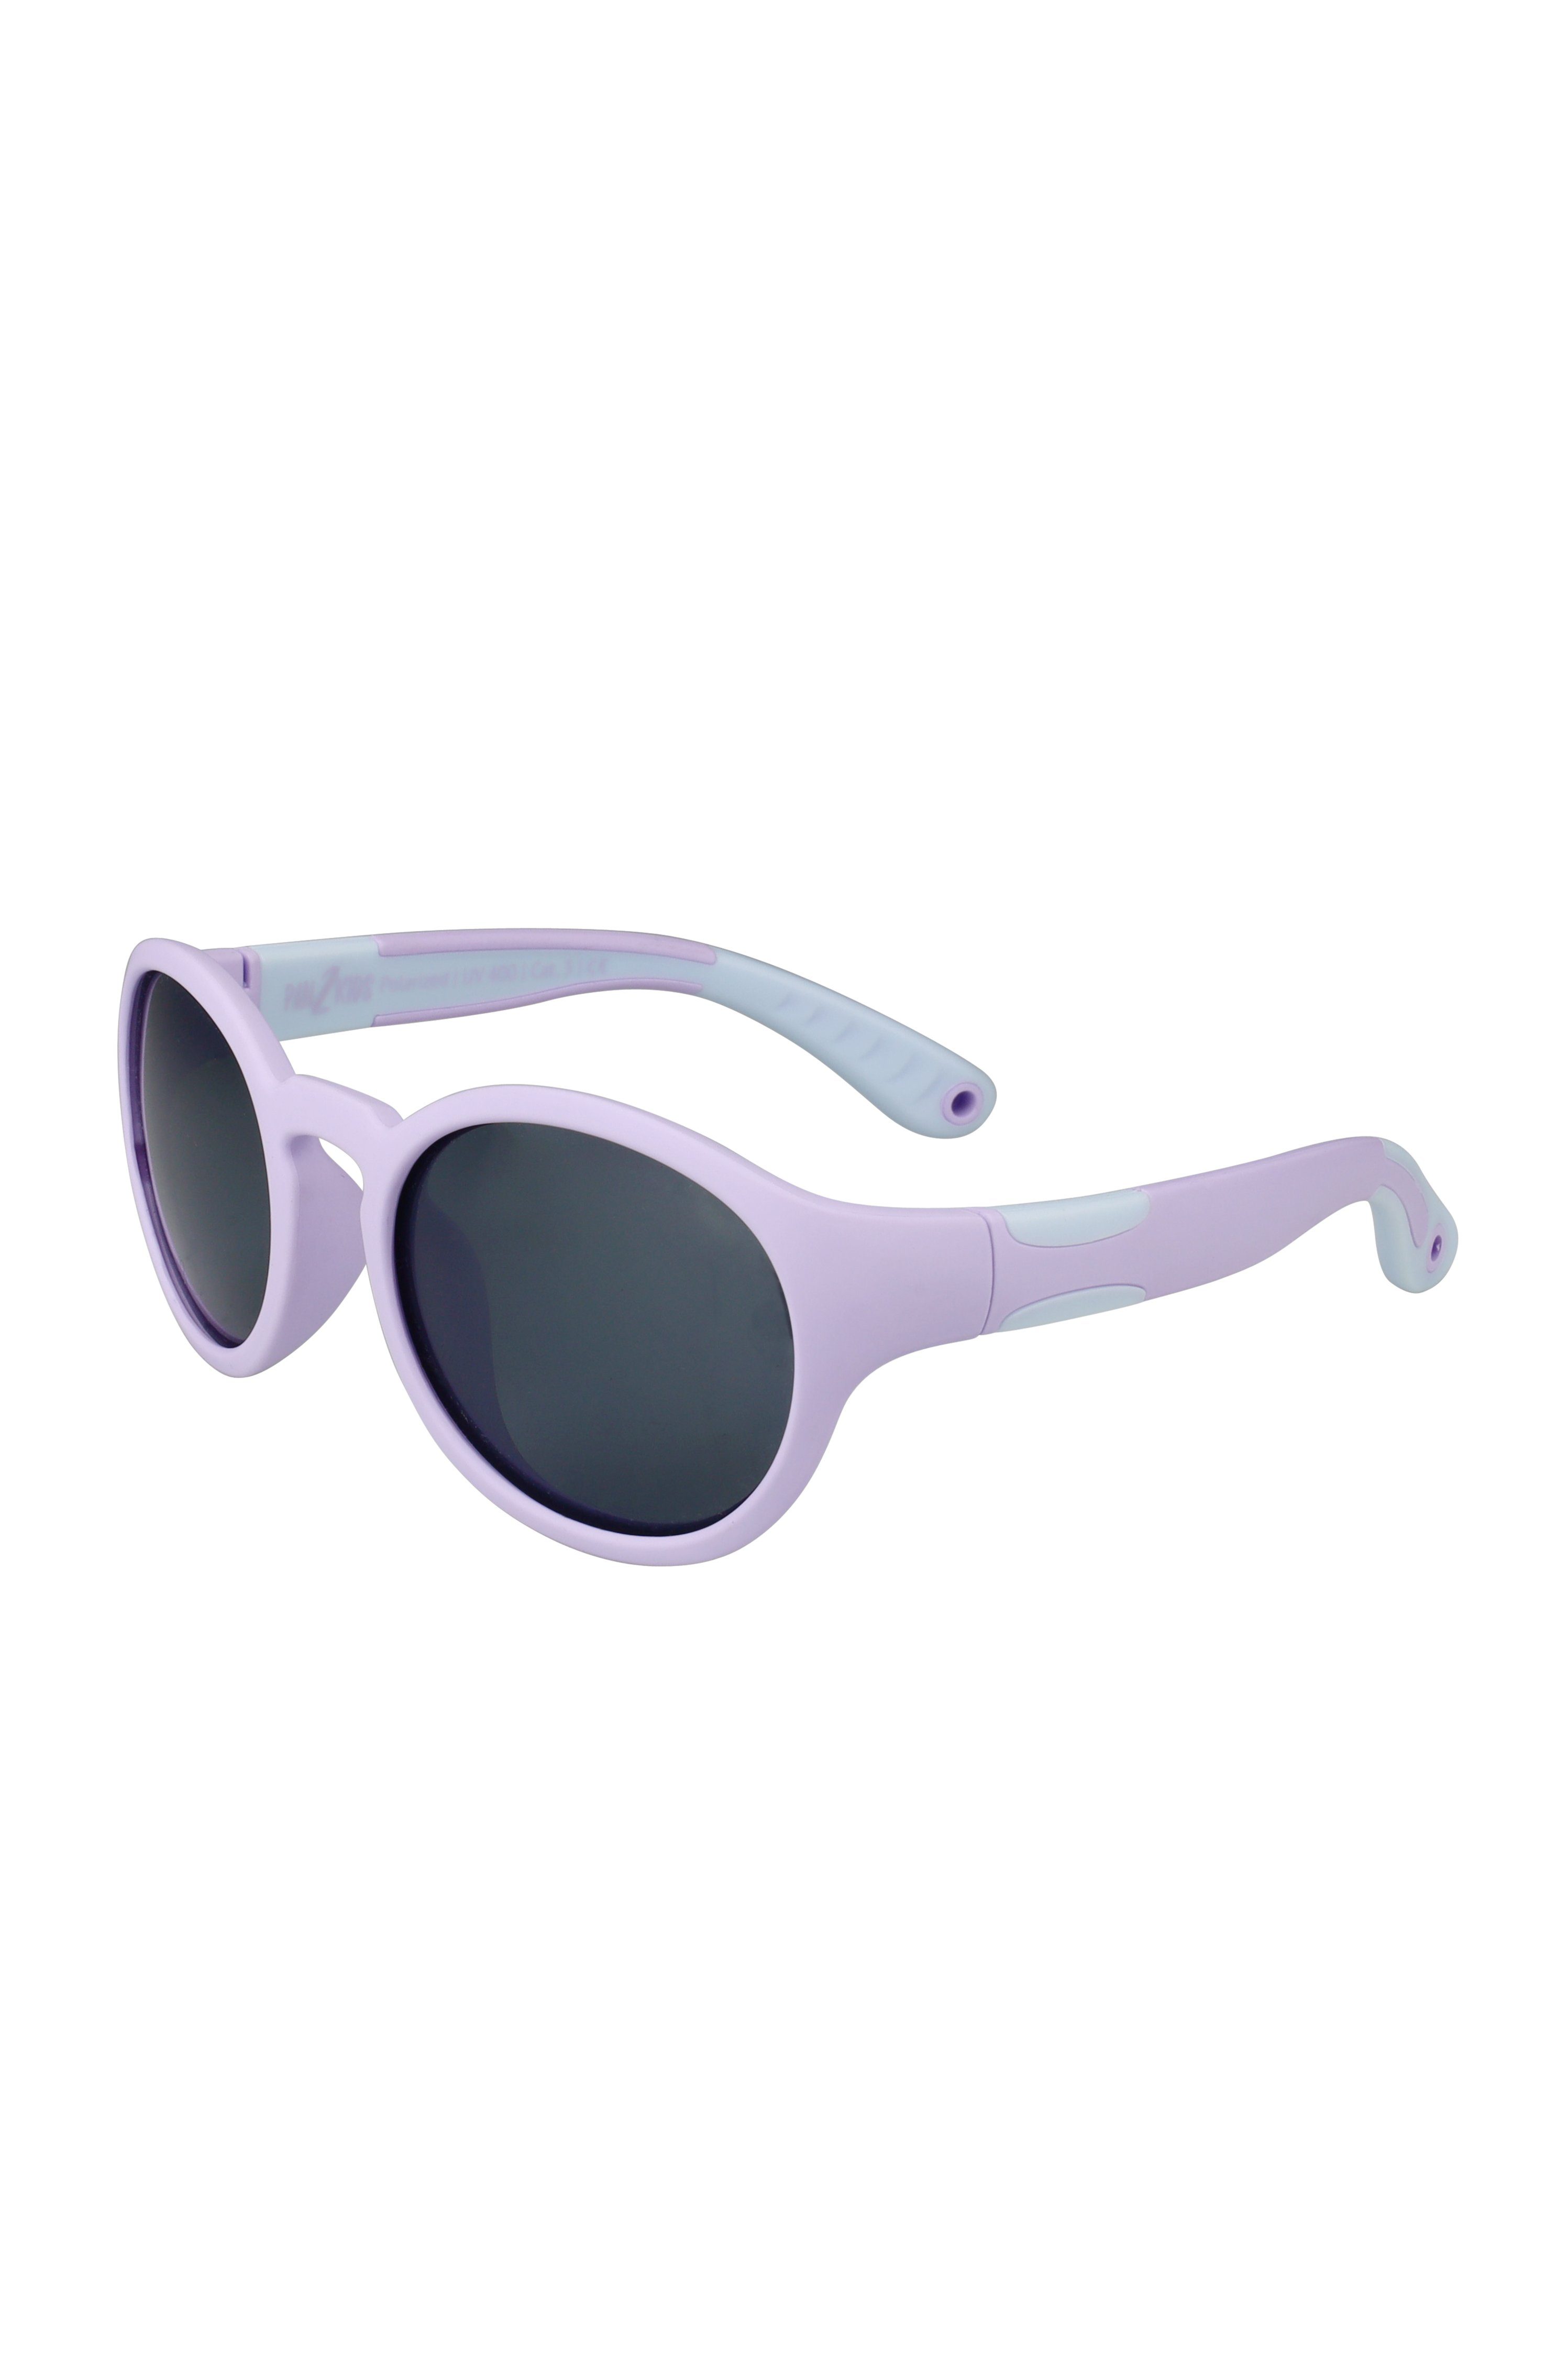 ActiveSol SUNGLASSES Sonnenbrille für Kinder - Pan2Kids, Panto Design, 2 – 5 Jahre, polarisiert Digital Lavender | Kindersonnenbrillen